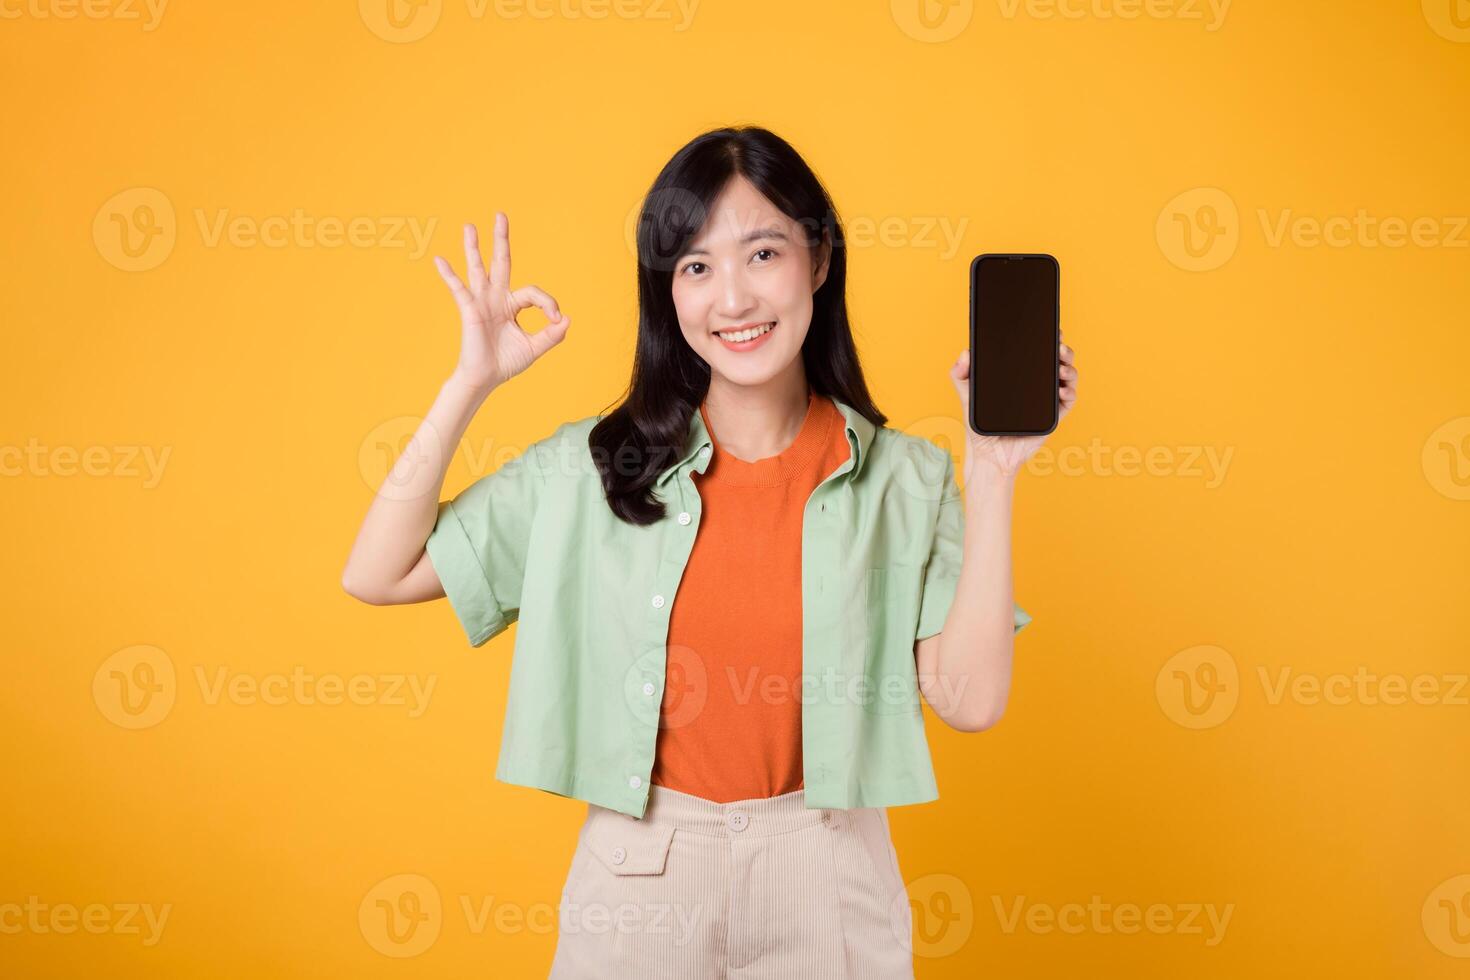 emoción de un nuevo móvil solicitud con un alegre joven asiático mujer 30, poniéndose naranja camisa y verde saltador, mostrando teléfono inteligente pantalla con bueno mano gesto en amarillo estudio antecedentes. foto